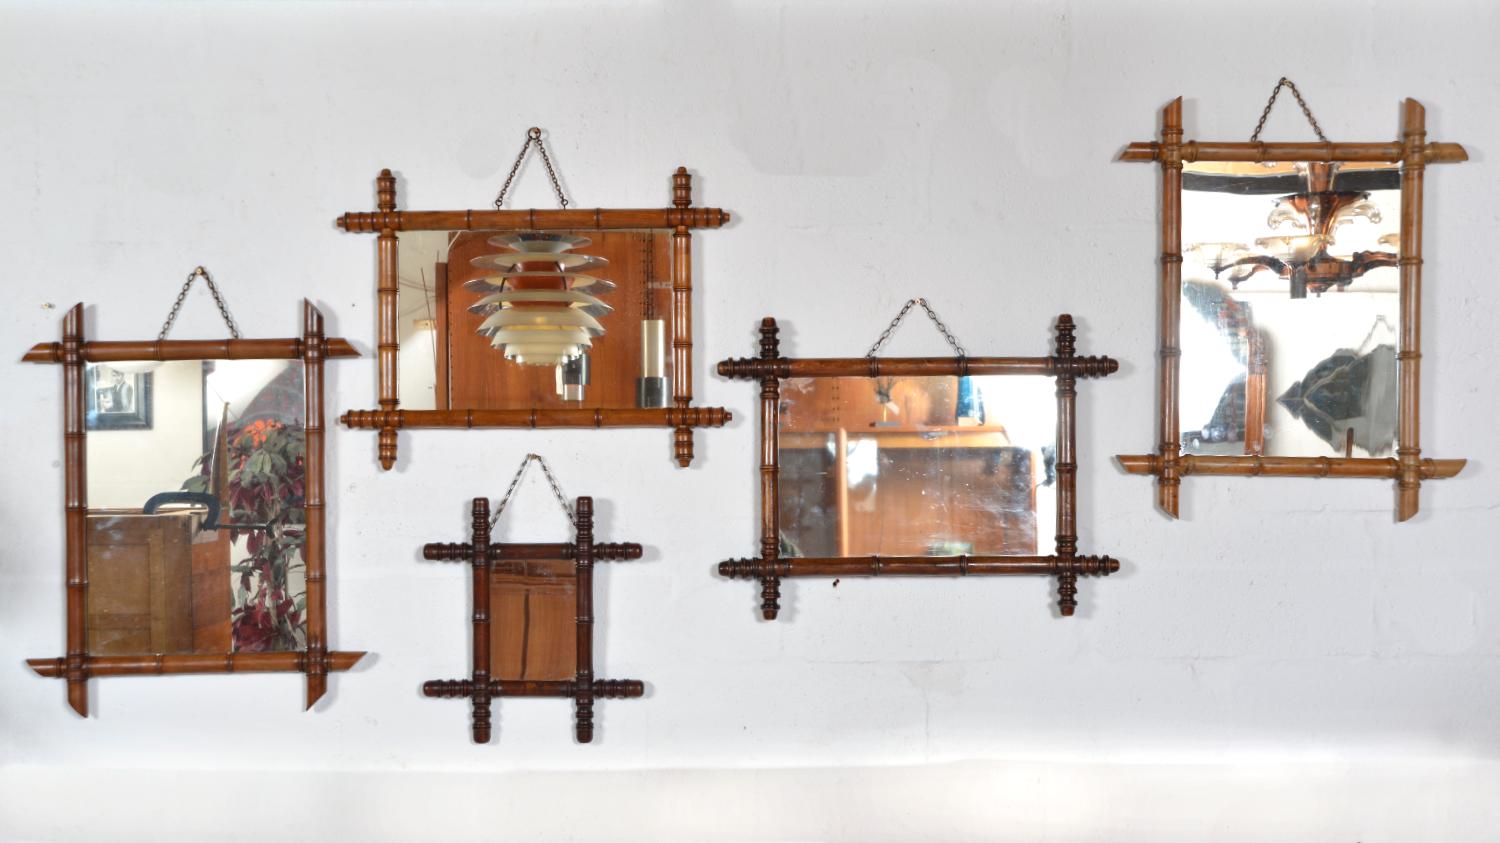 Un ensemble merveilleusement décoratif de cinq cadres en faux bambou avec miroirs d'origine, fabriqués en France au milieu du 19e siècle. Les cadres (généralement en bois fruitier) sont tournés de manière à imiter le bambou et ont un aspect